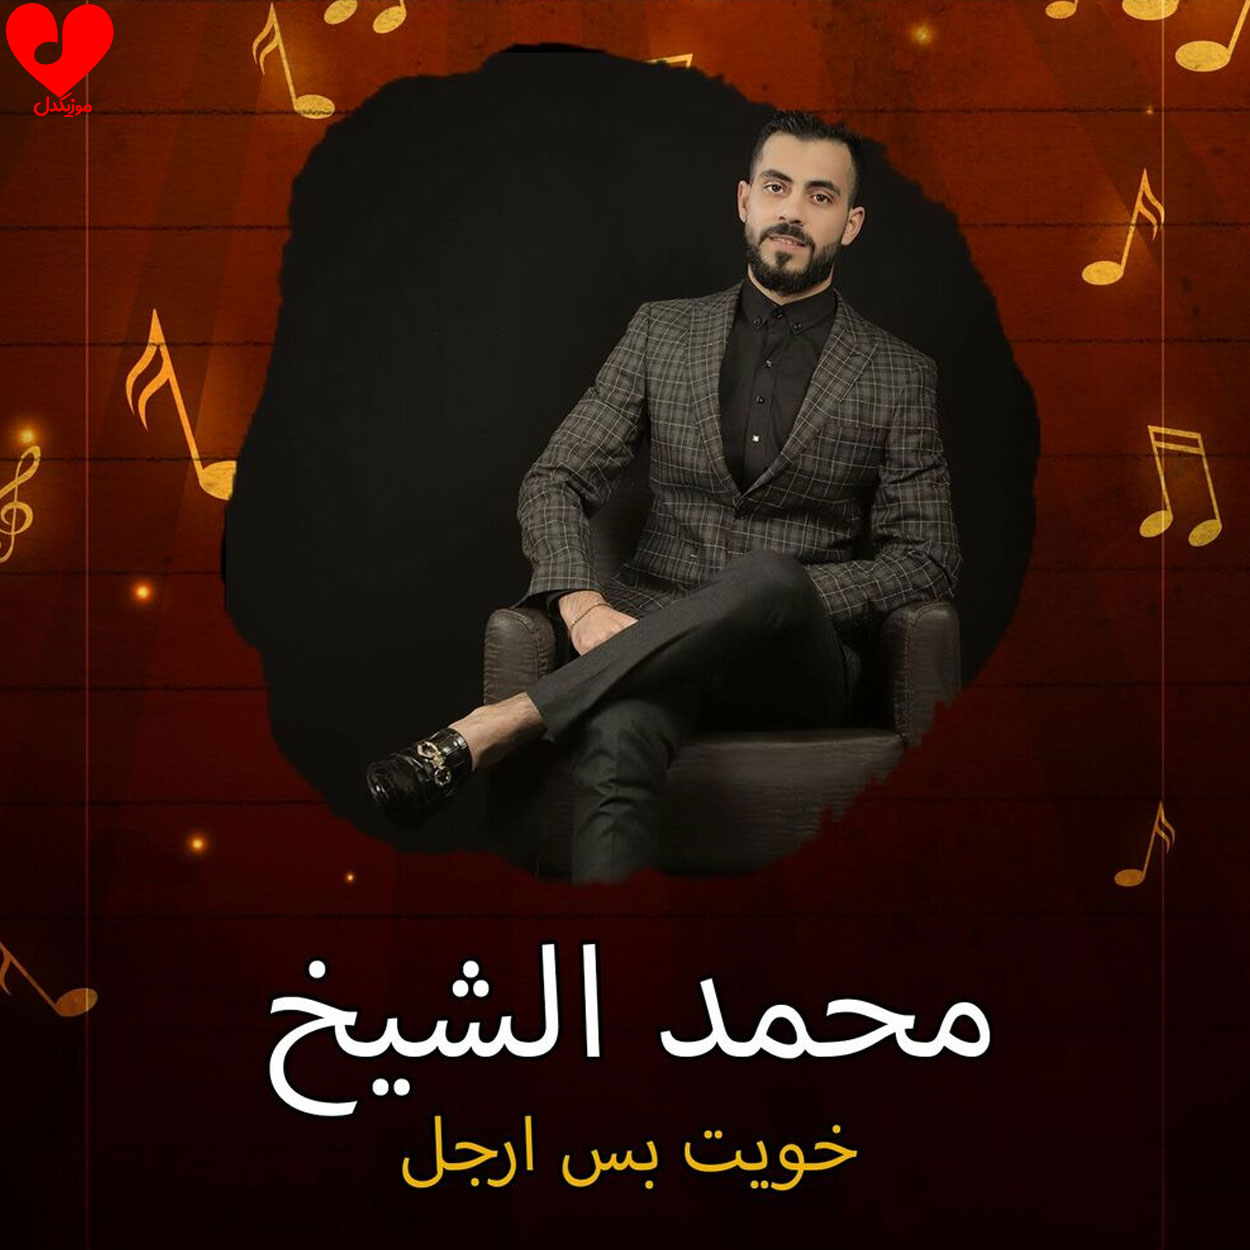 دانلود آهنگ خویت بس ارجل از محمد الشیخ با متن (کامل) – آب موزیک